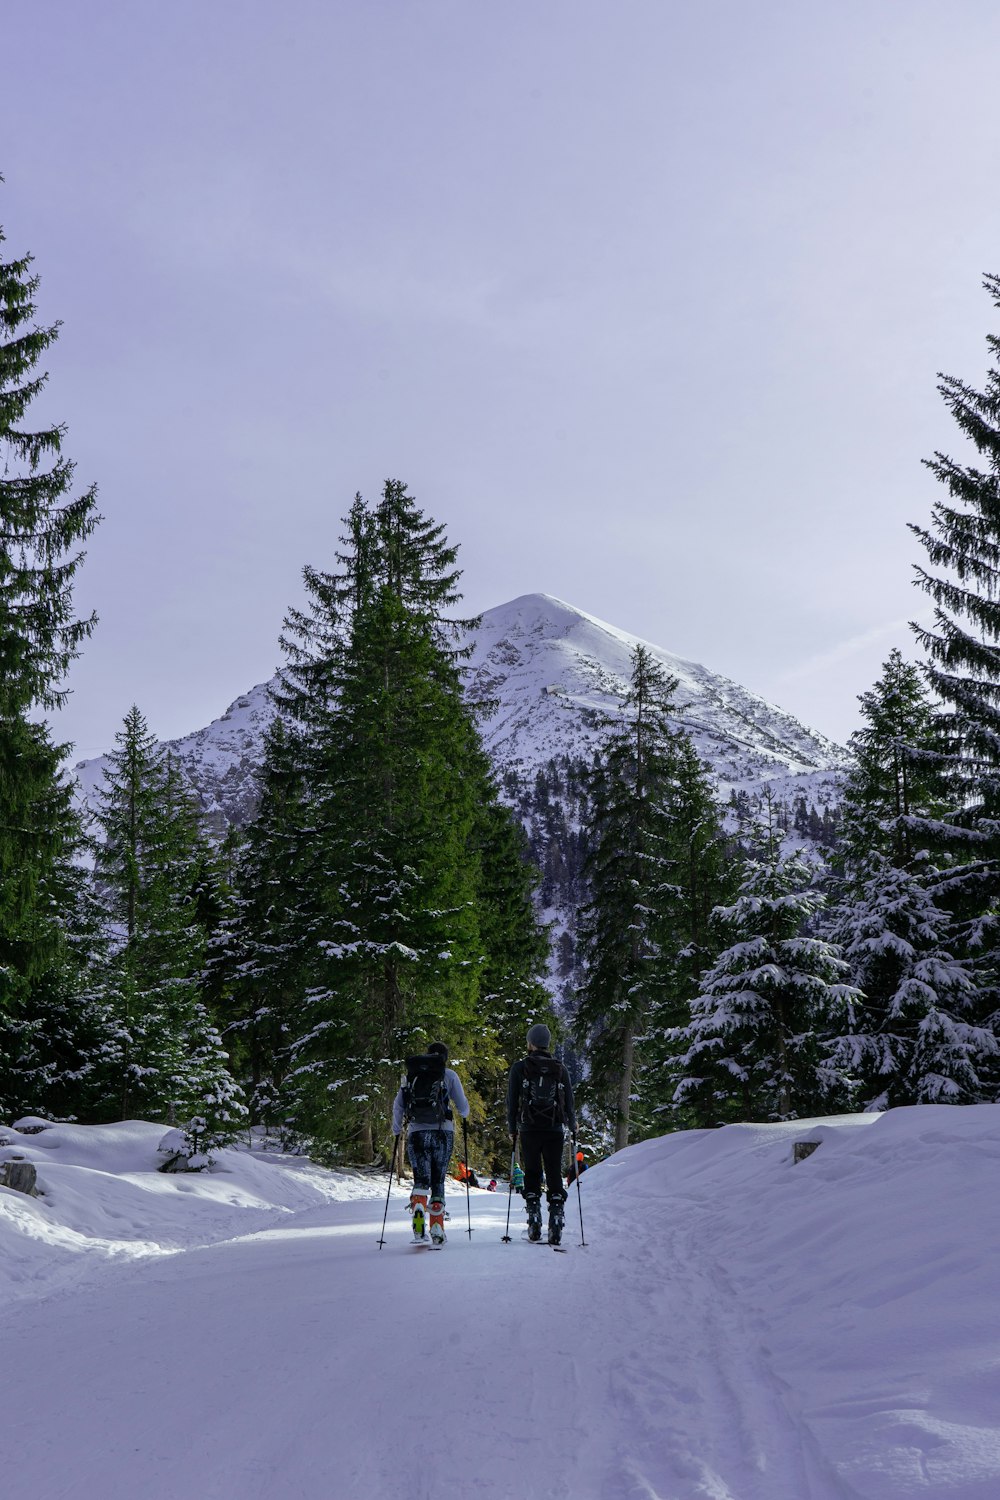 Menschen, die tagsüber auf schneebedecktem Boden in der Nähe von Bäumen und schneebedeckten Bergen spazieren gehen